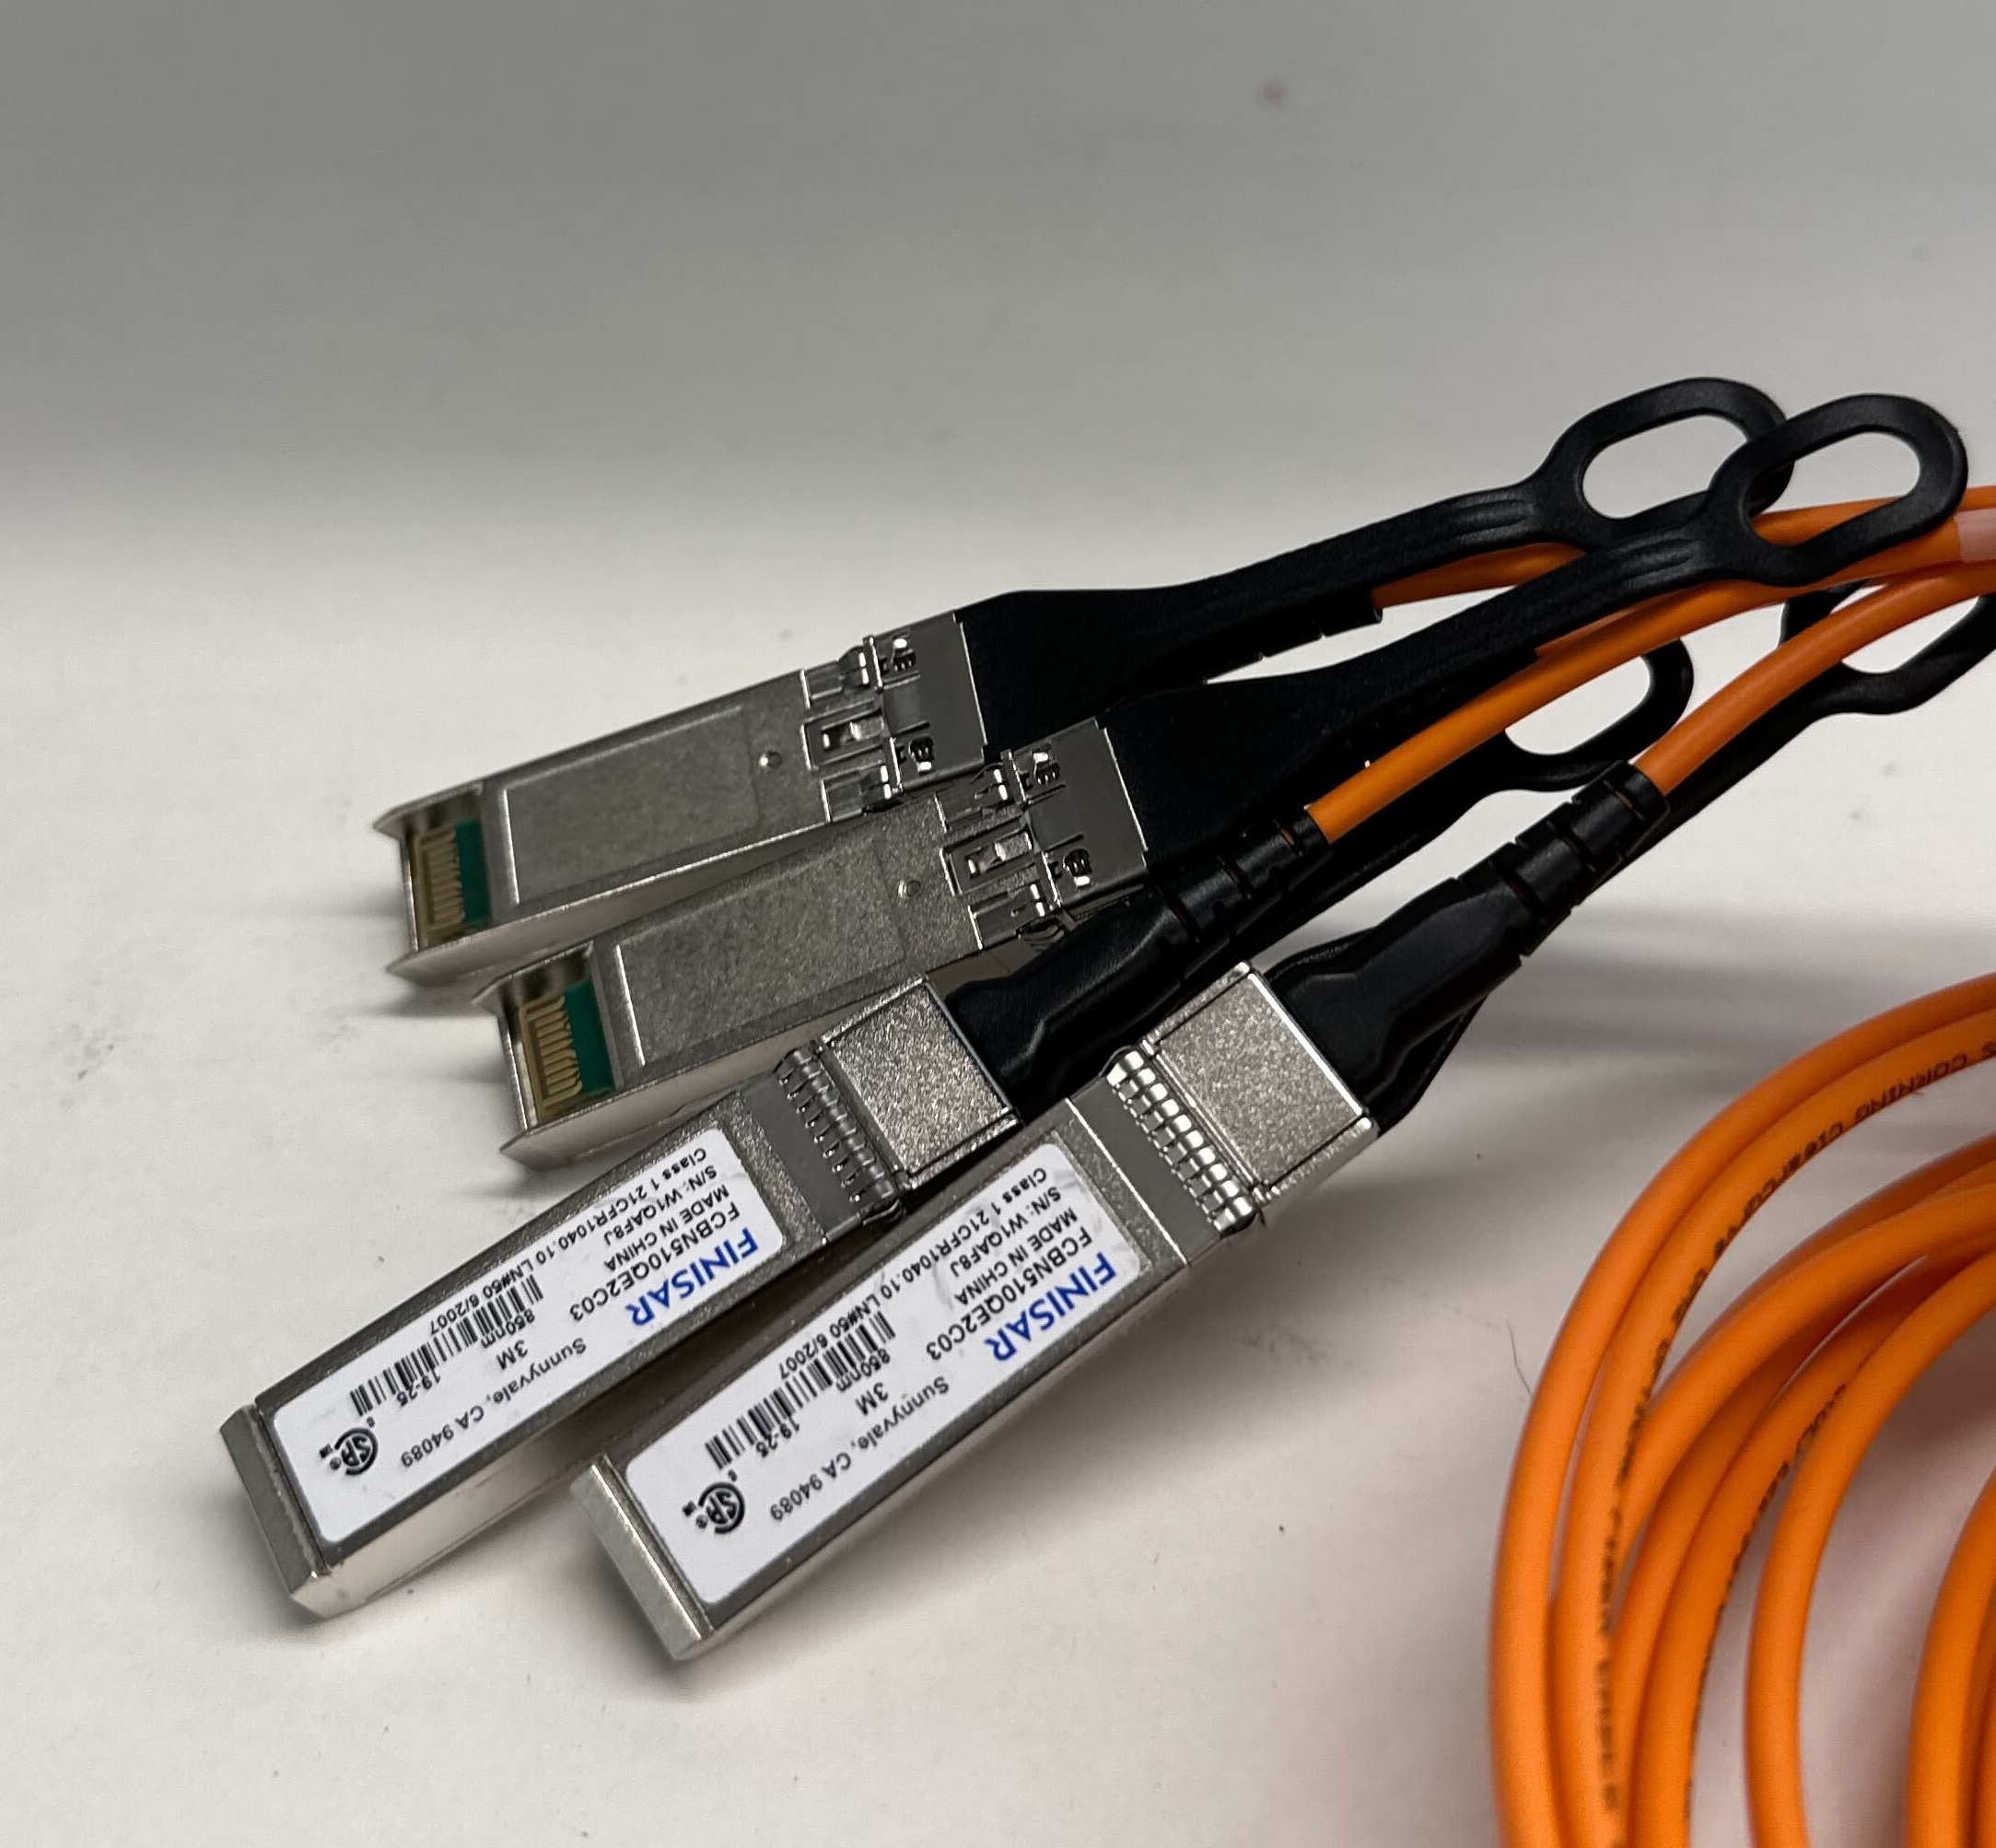 顯示 4 條分接線的 QSFP 纜線影像。